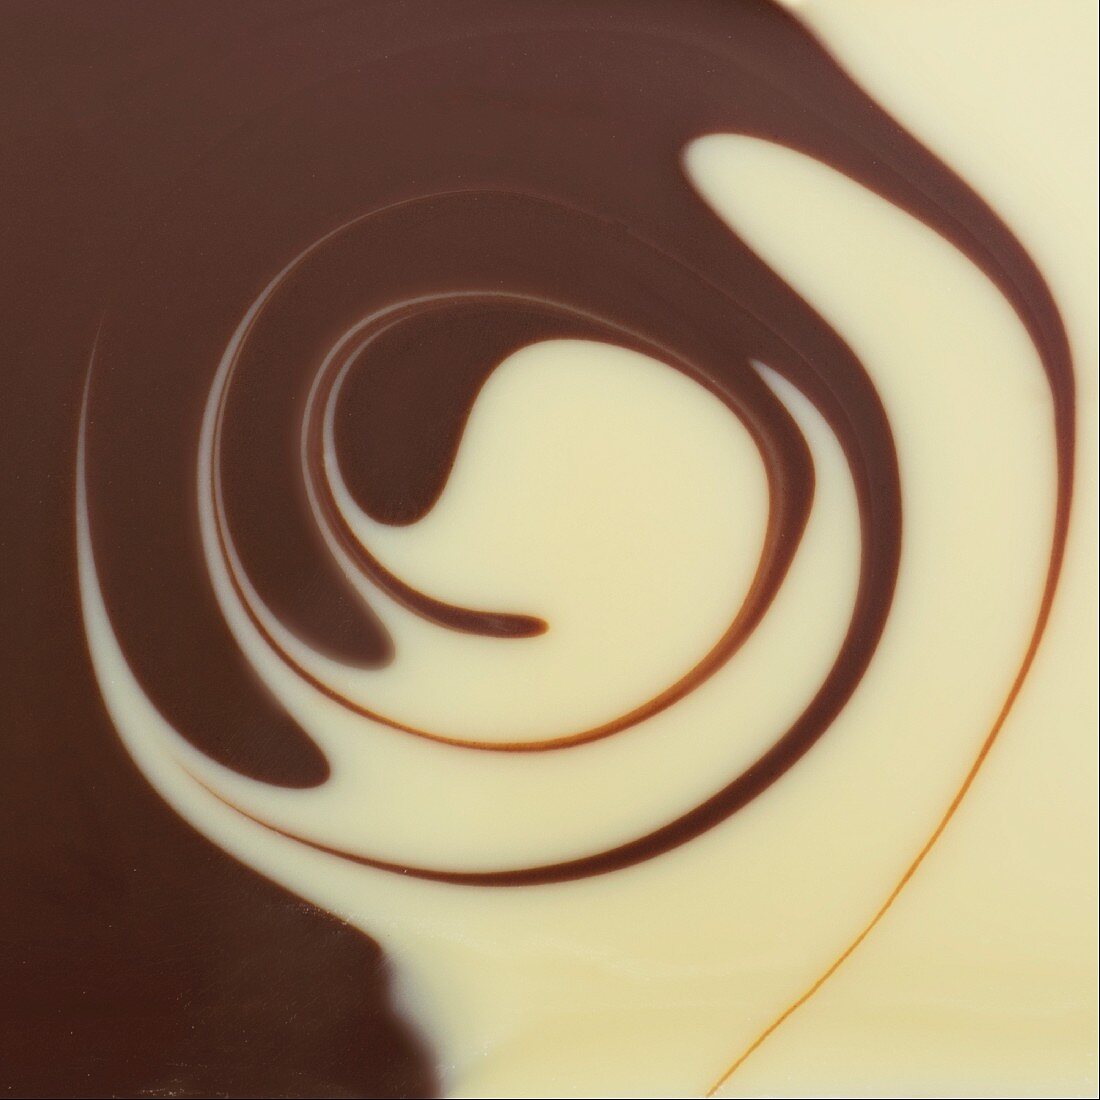 Saucenspiegel aus heller & dunkler Schokoladensauce mit Spiralmuster